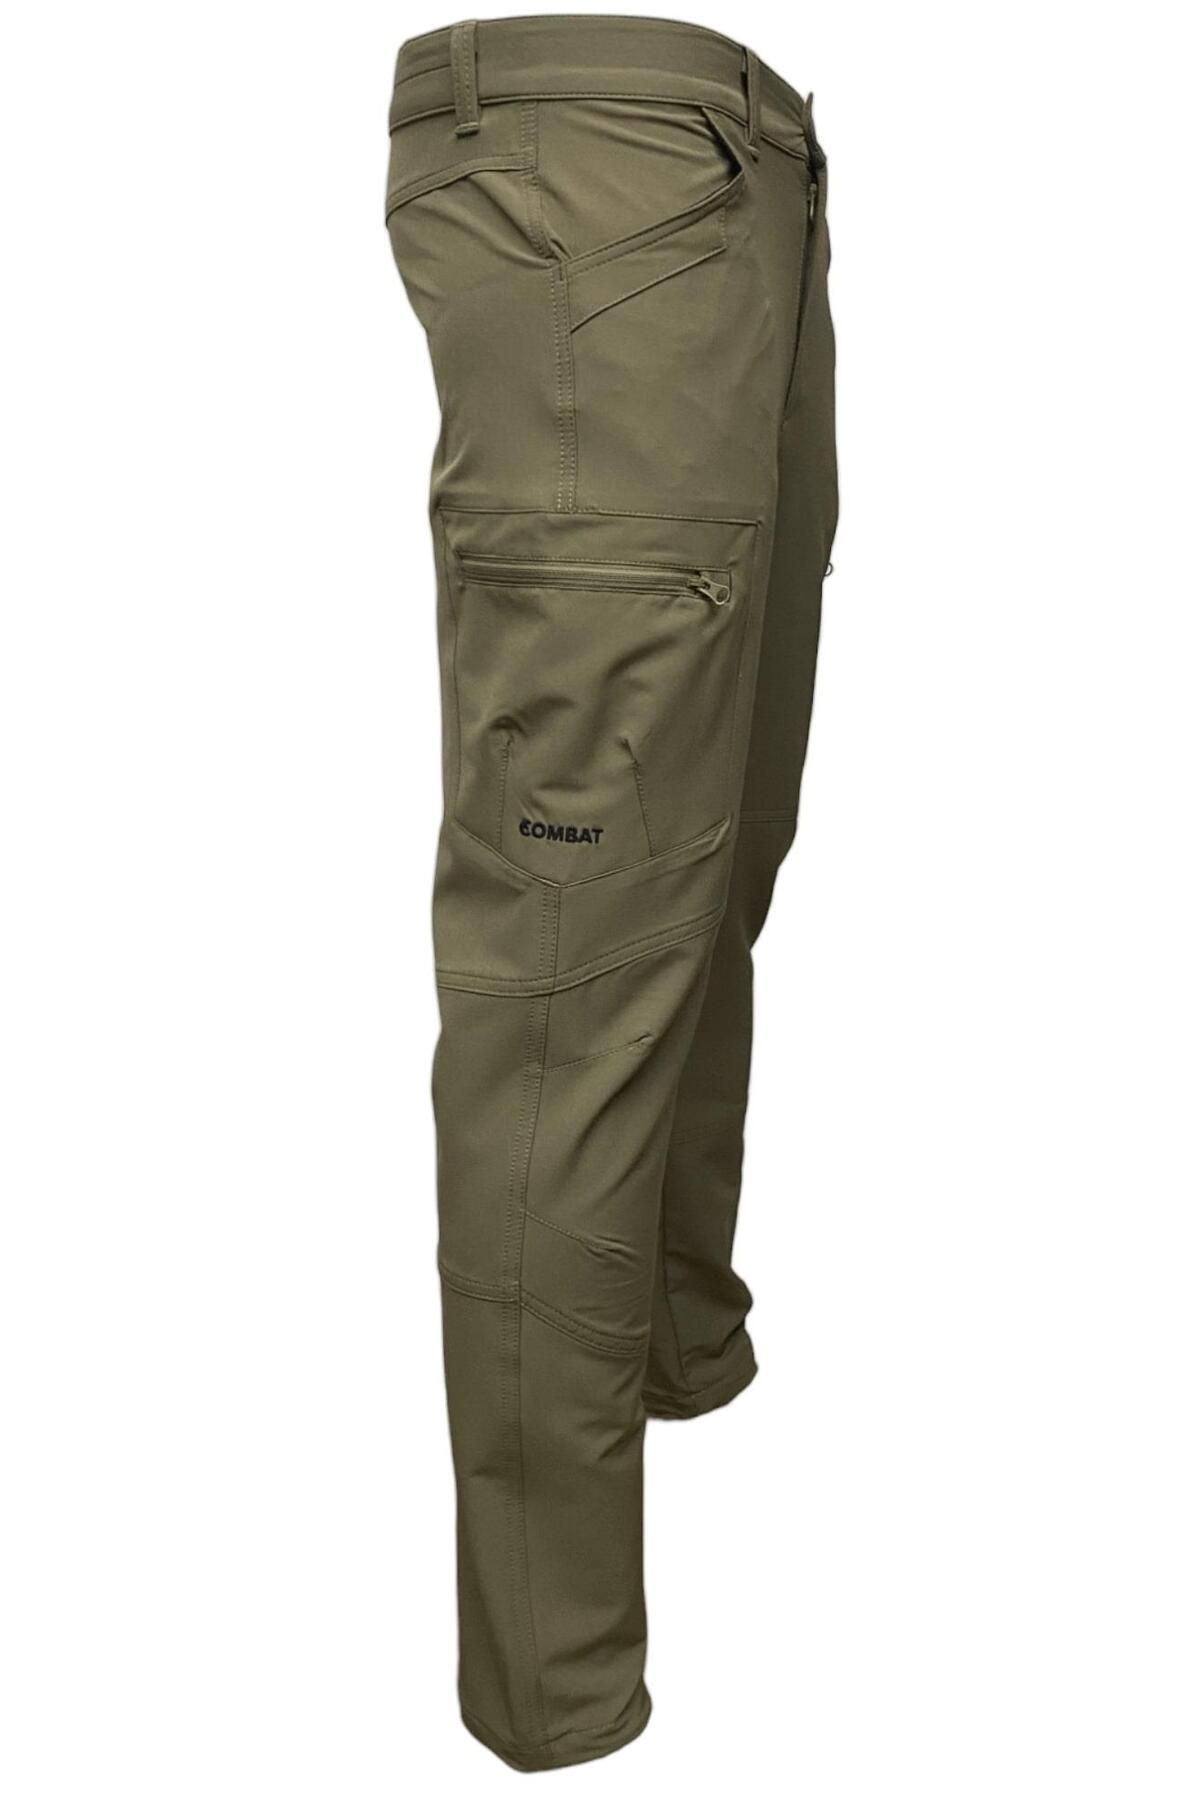 Combat Tactical Pantolon Hıkıng - 522 - N21